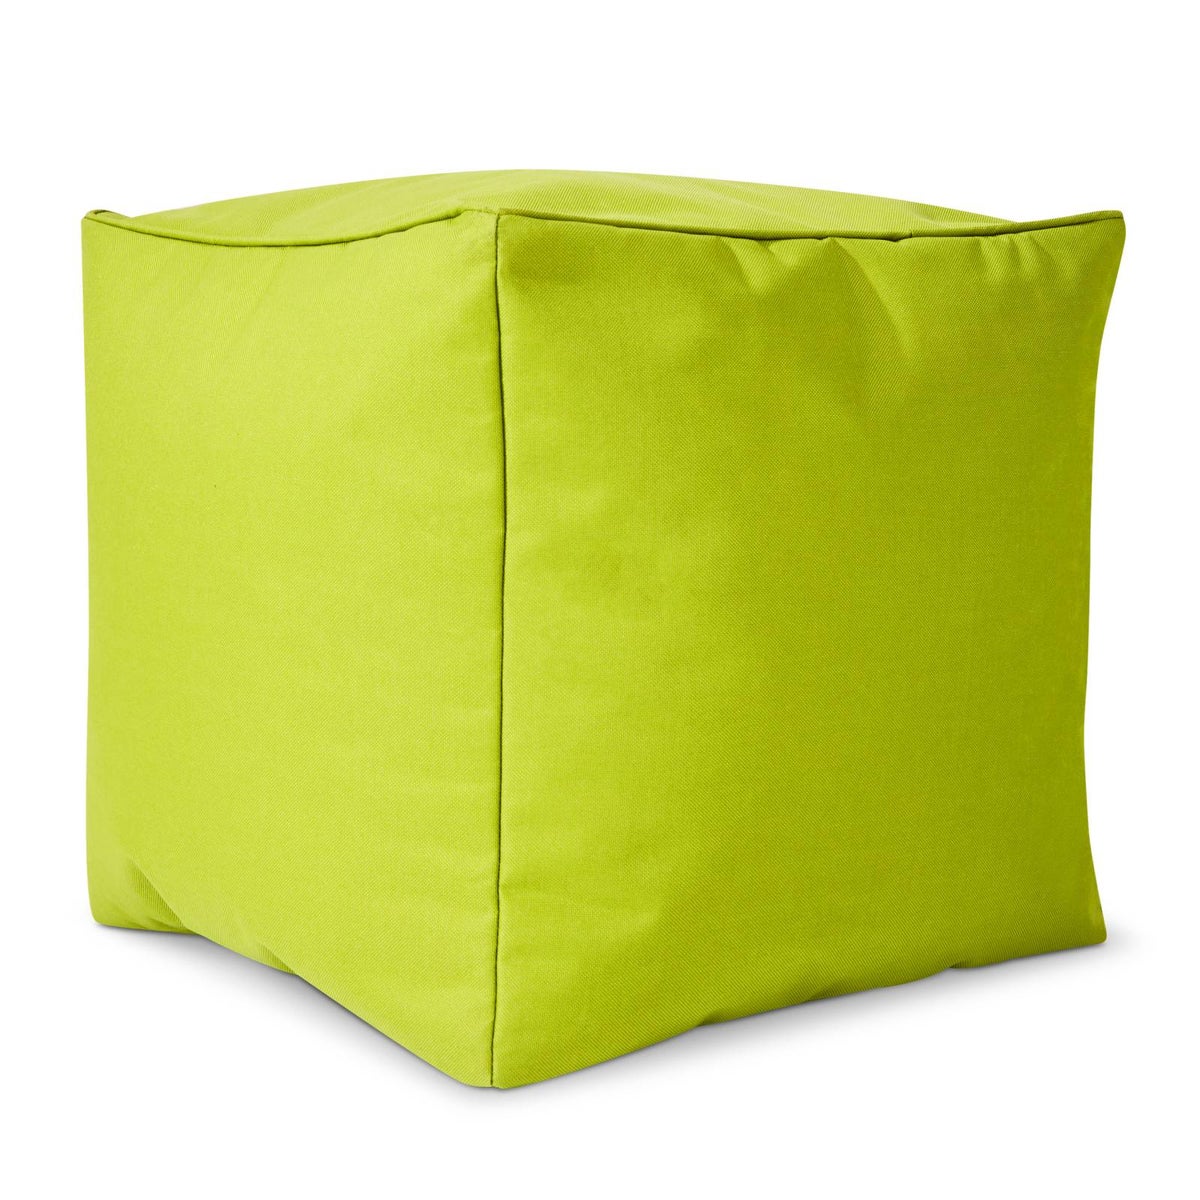 Green Bean© Sitzsack-Hocker 40x40x40cm mit EPS-Perlen Füllung - Fußhocker Fußkissen Sitz-Pouf für Sitzsäcke - Bodenkissen für Kinder und Erwachsene - Fußablage Sitzkissen Sitzhocker Hellgrün